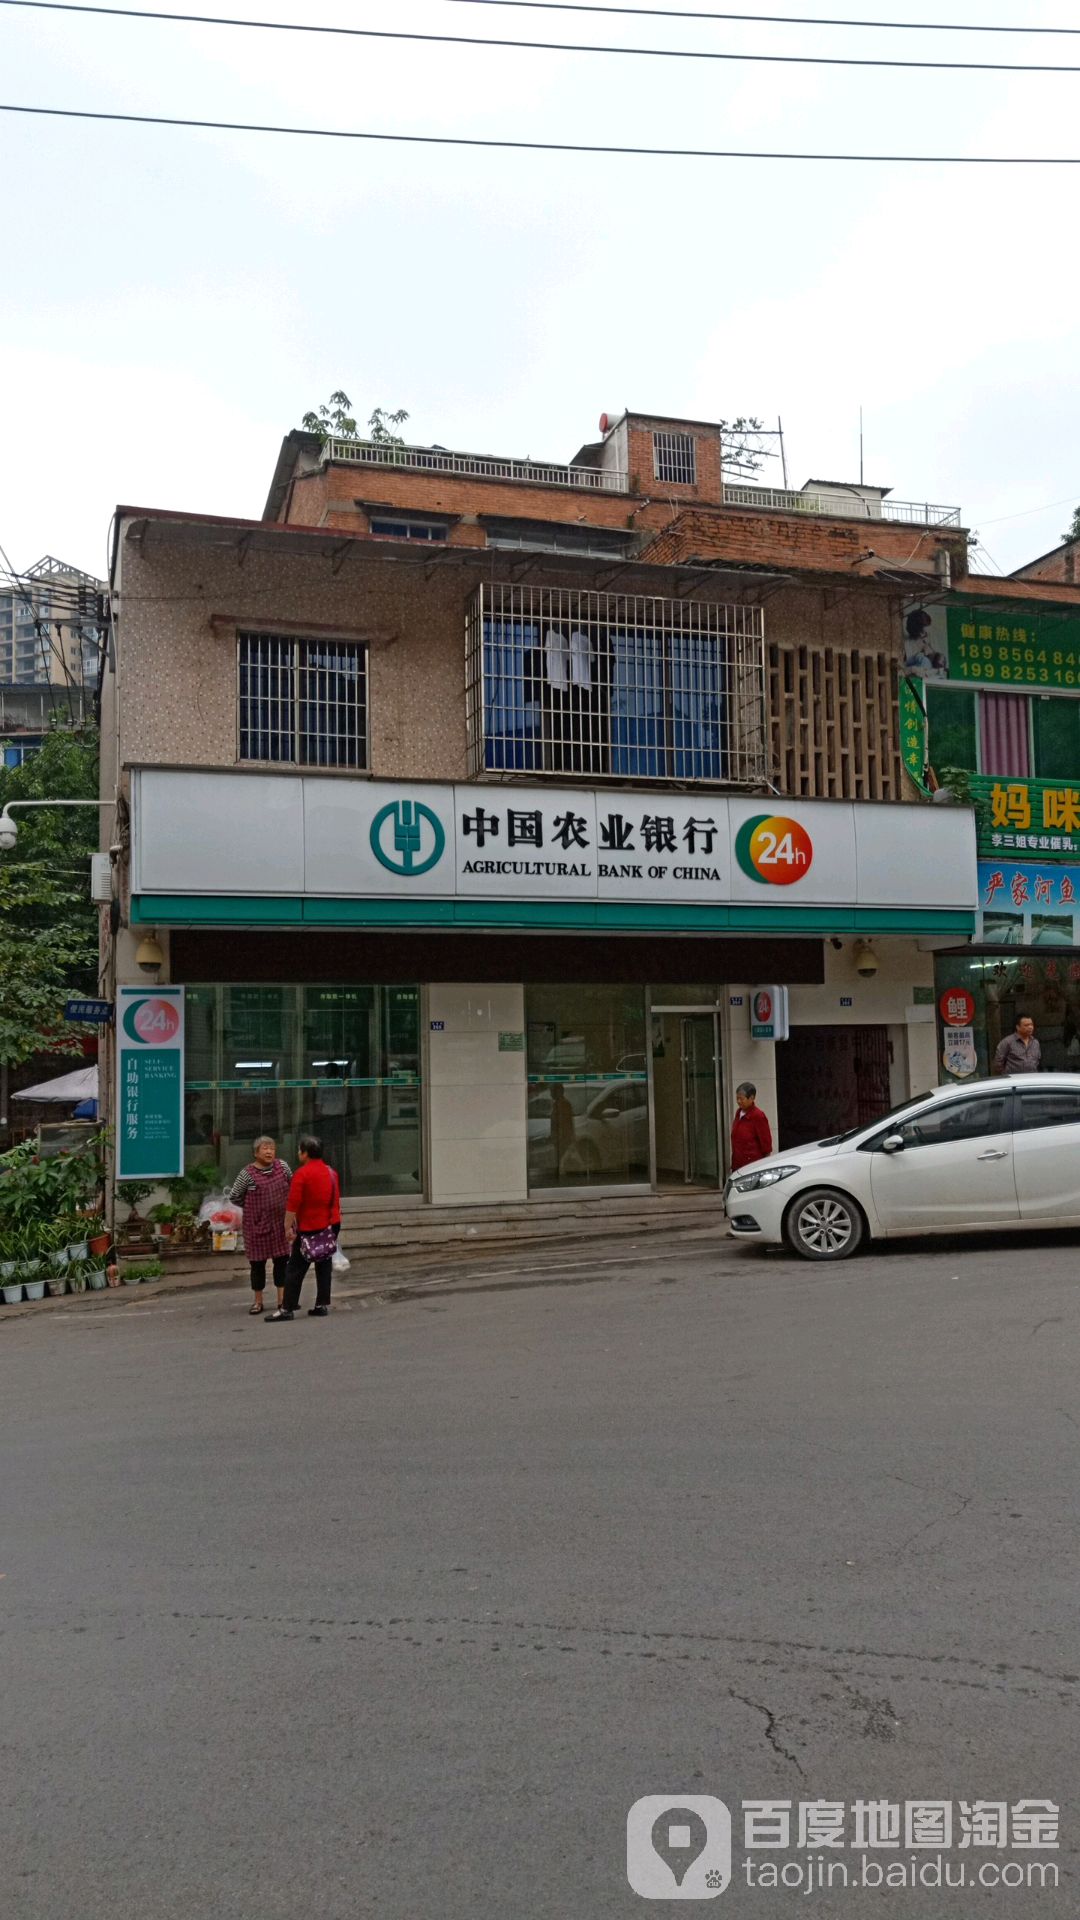 中國農業銀行24小時自助銀行(市中營業所)